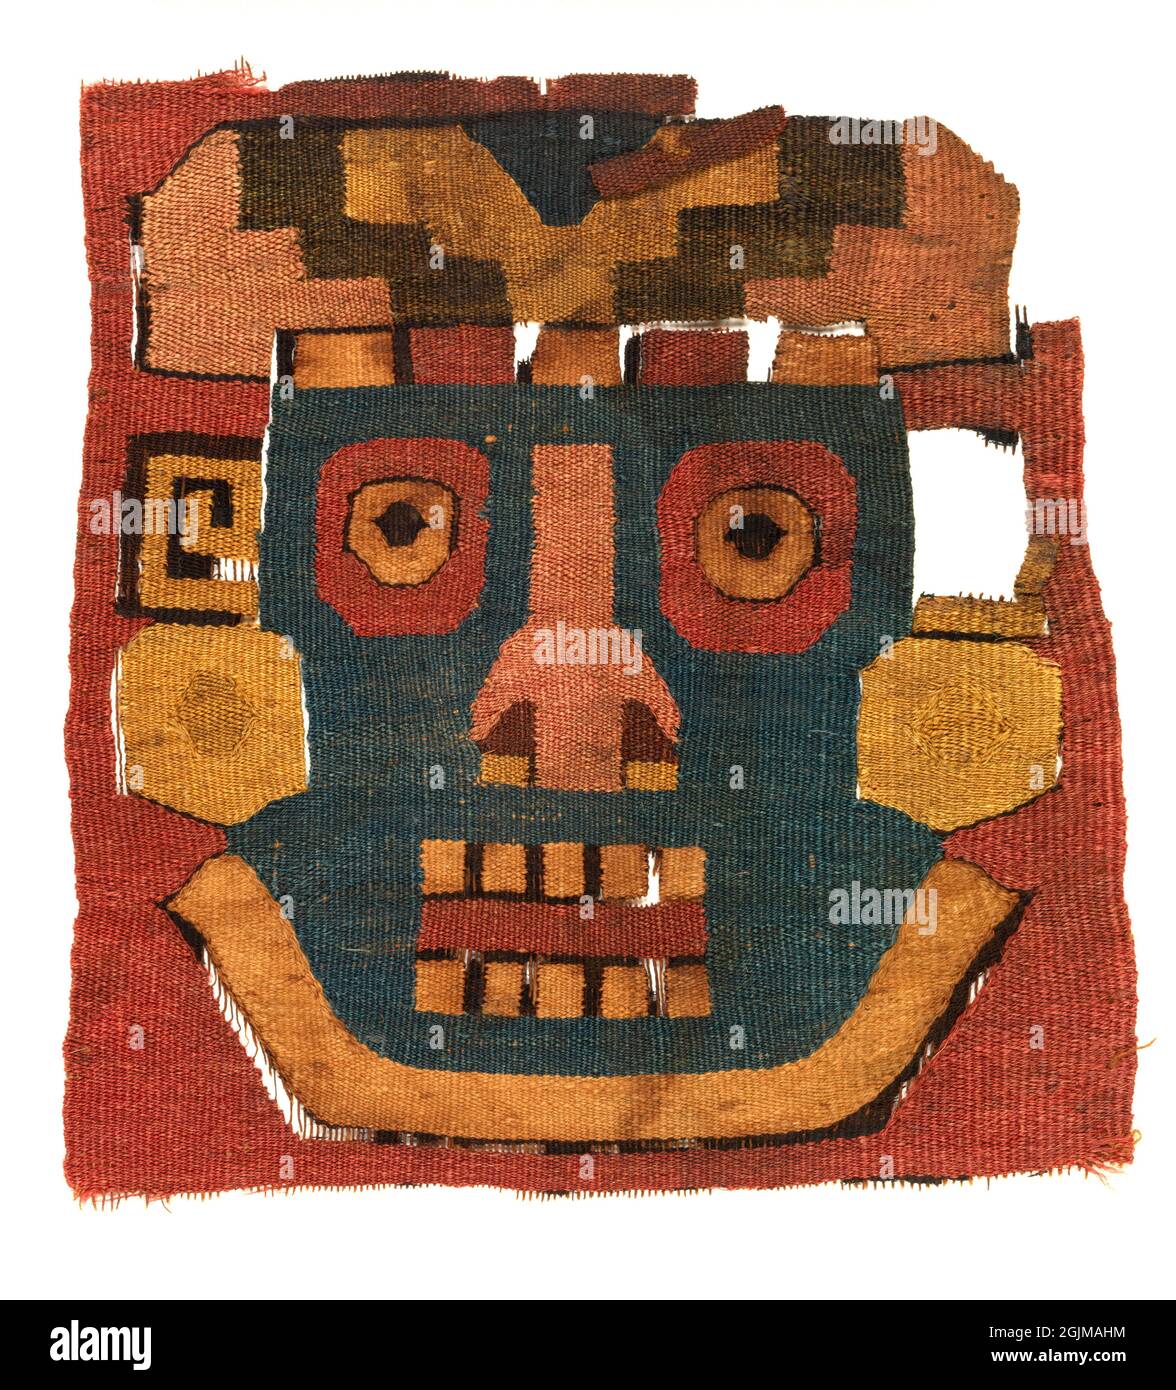 Frammento tessile peruviano di Precolumbian. Arazzo raffigurante una testa antropomorfa. Perù. c. 400CE Foto Stock